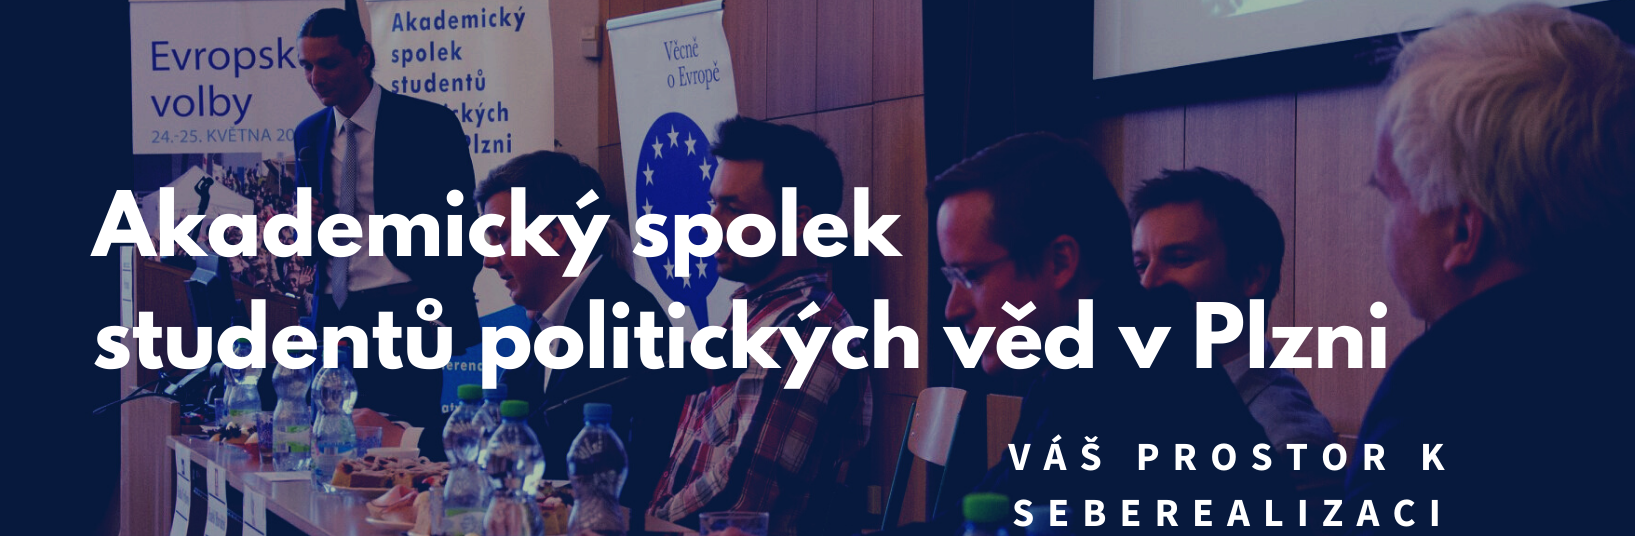 Akademický spolek studentů politických věd v Plzni_web